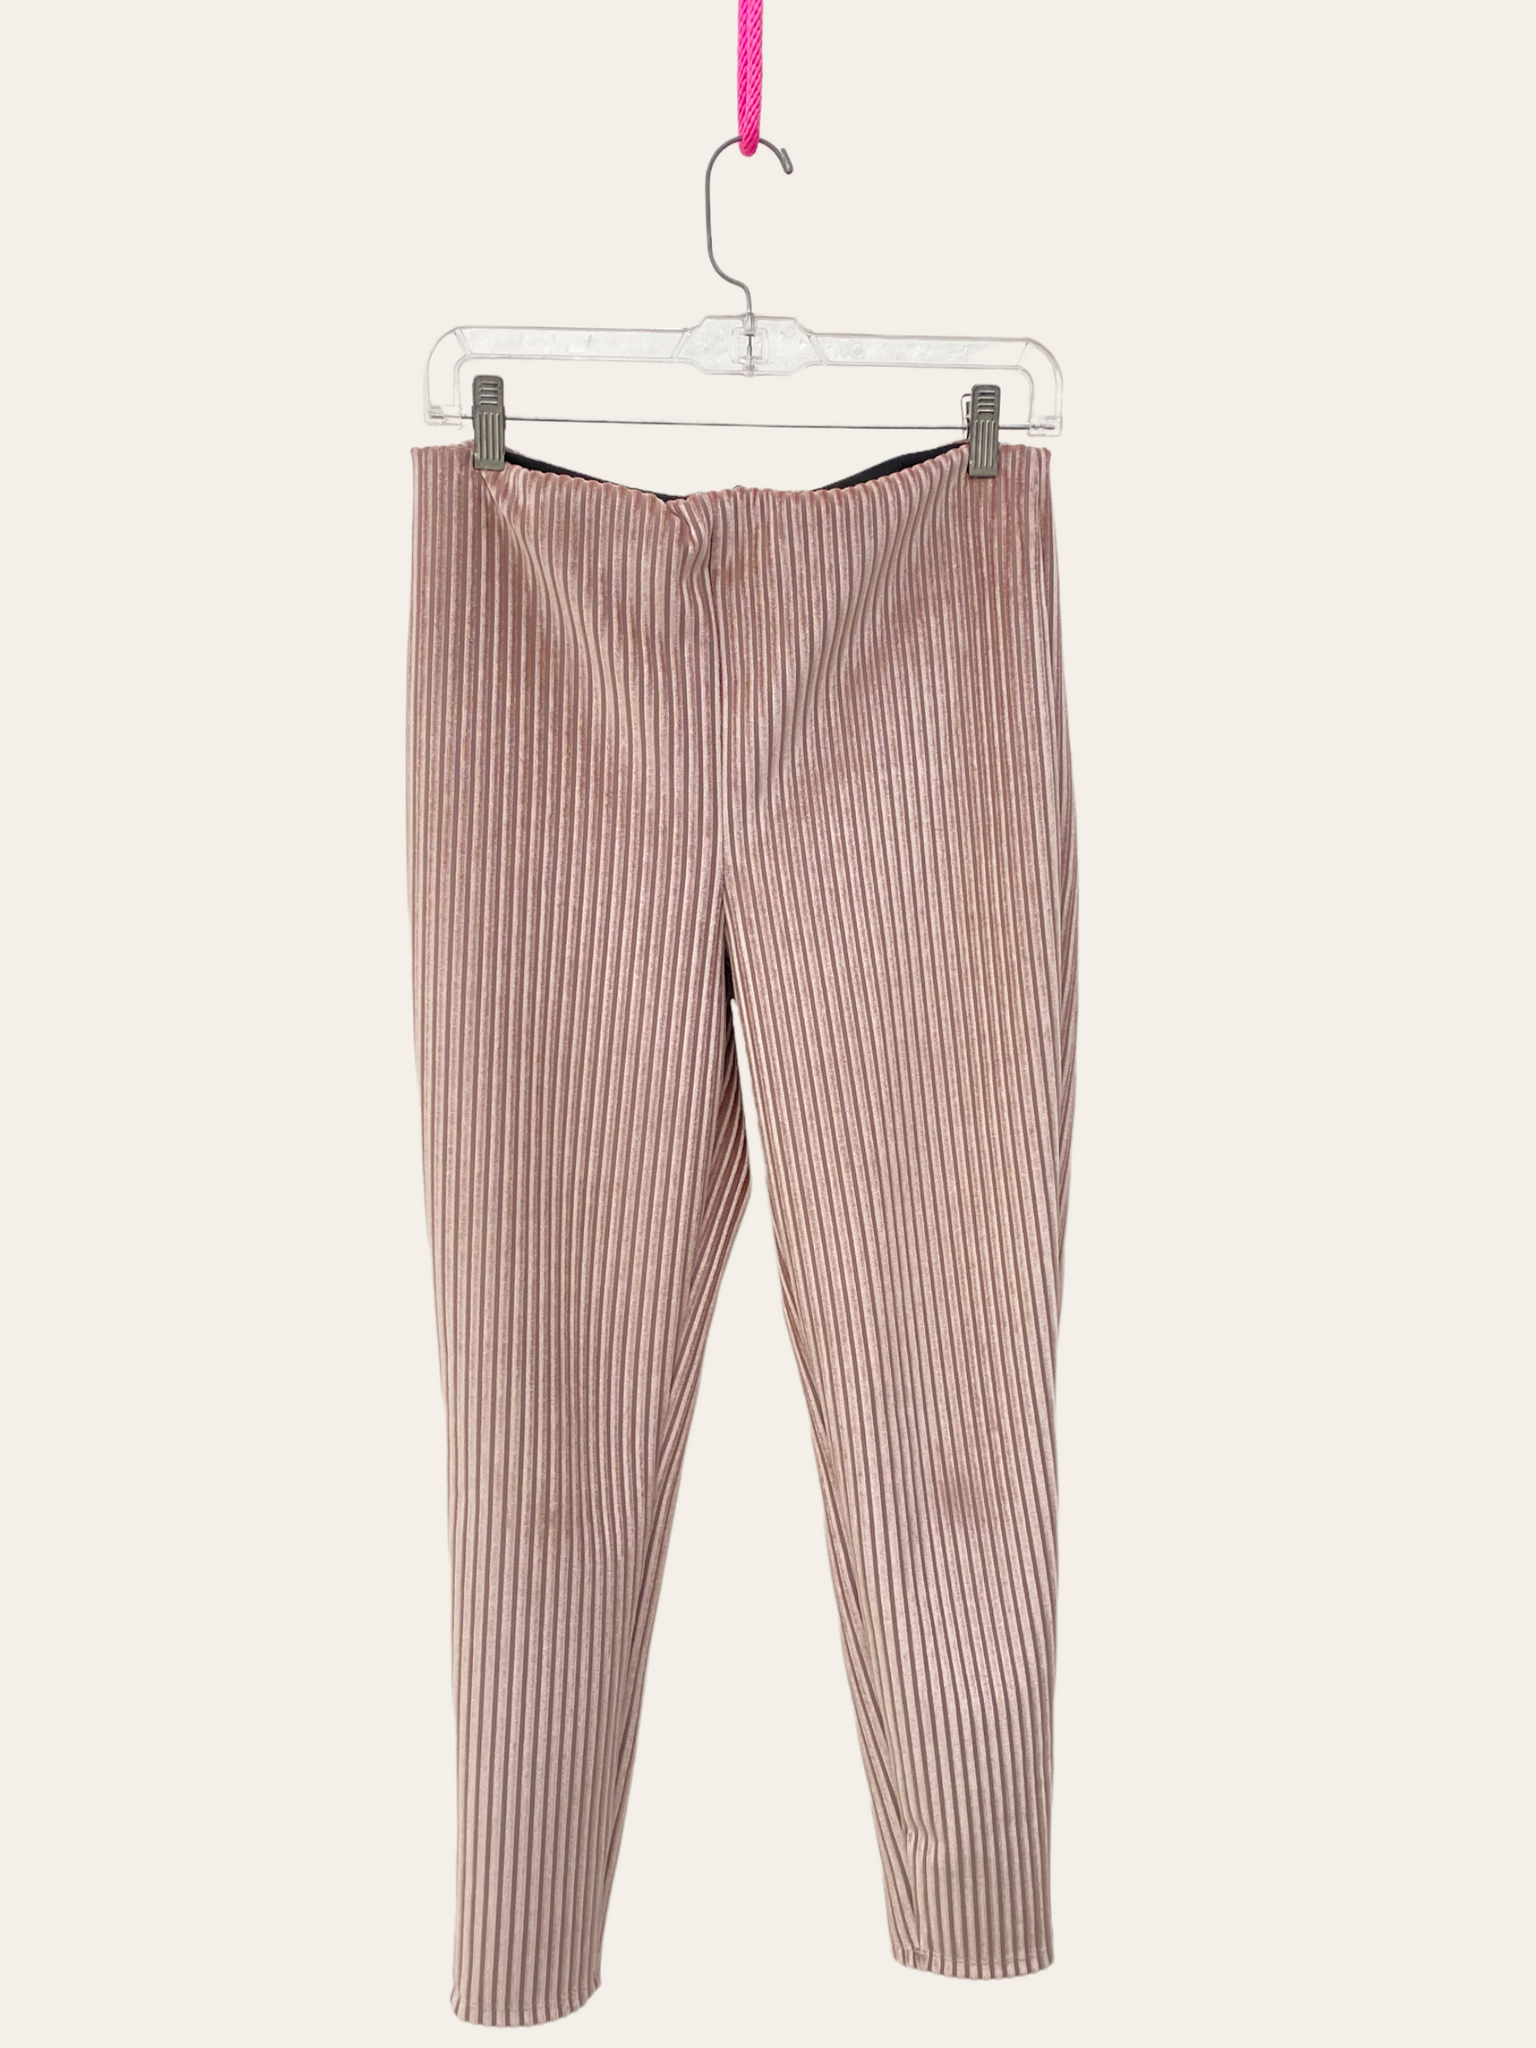 Pantalón rosa velvet / Pre-loved